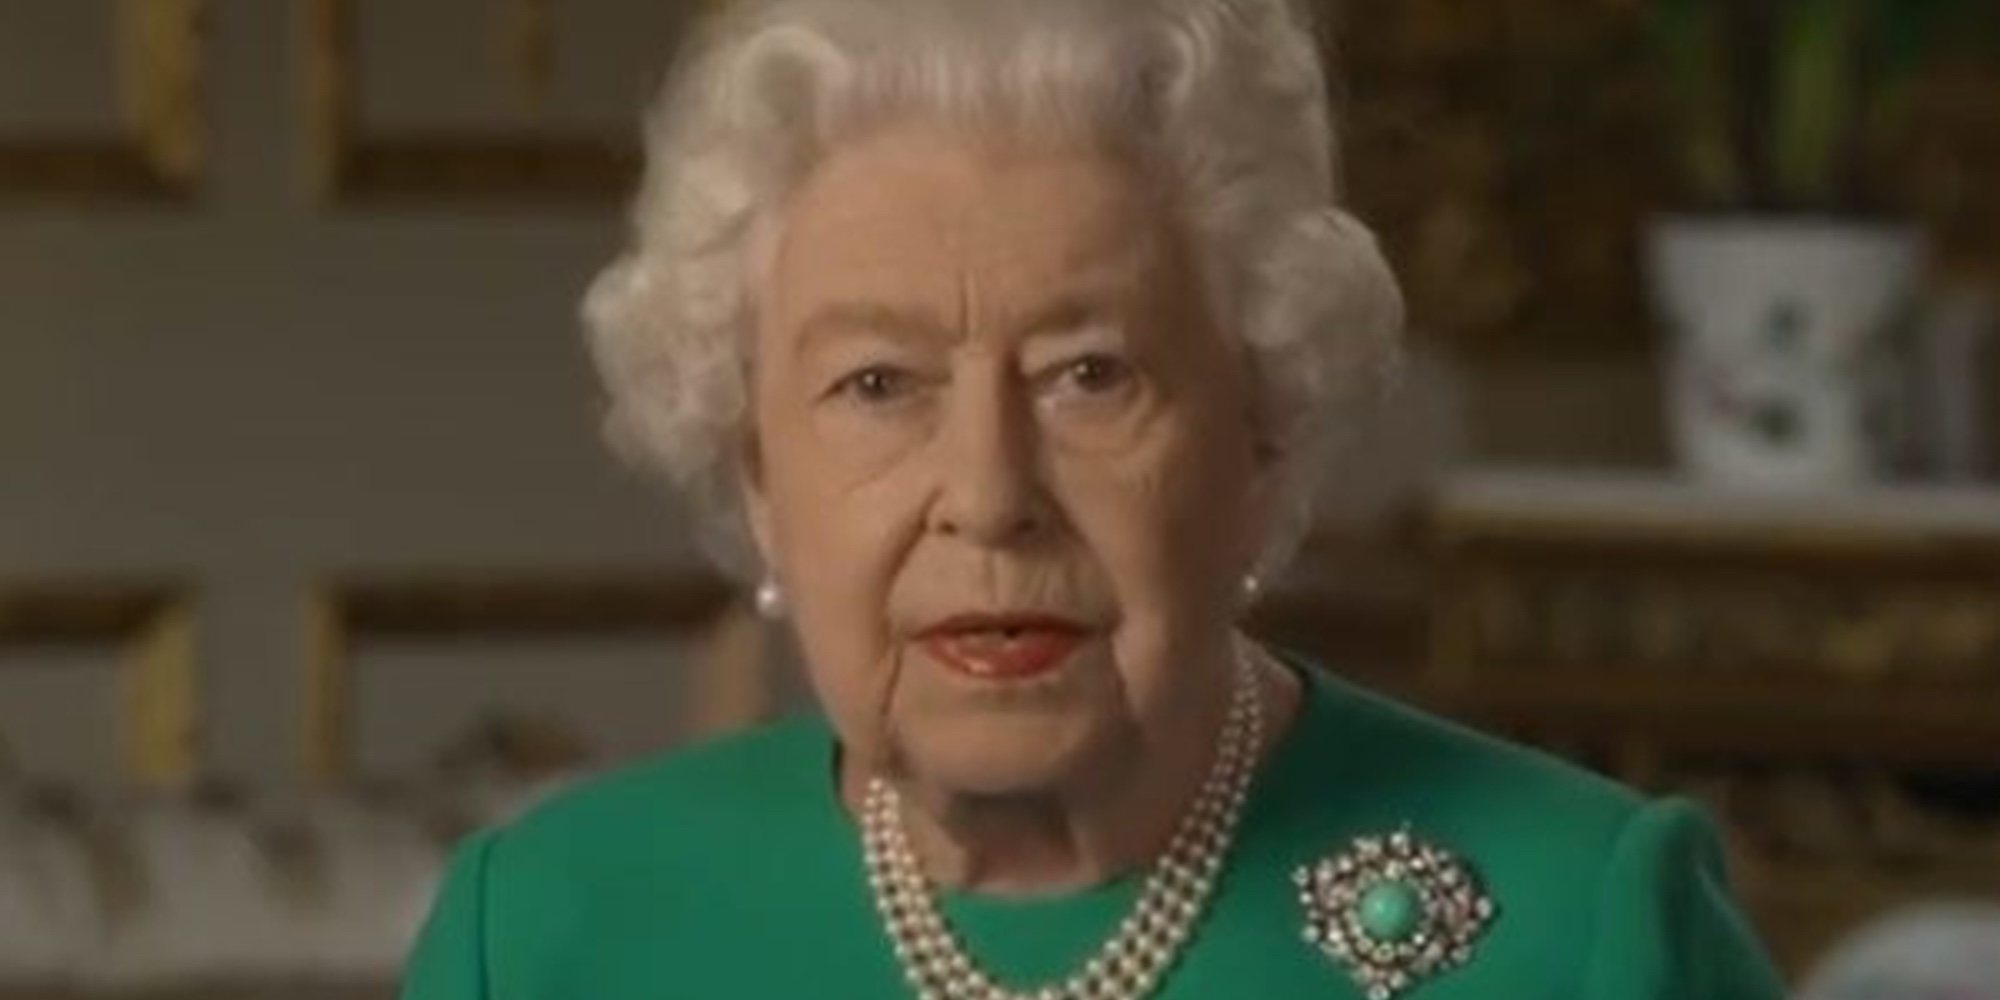 El esperanzador mensaje de la Reina Isabel en la lucha contra el coronavirus: "Lo superaremos"